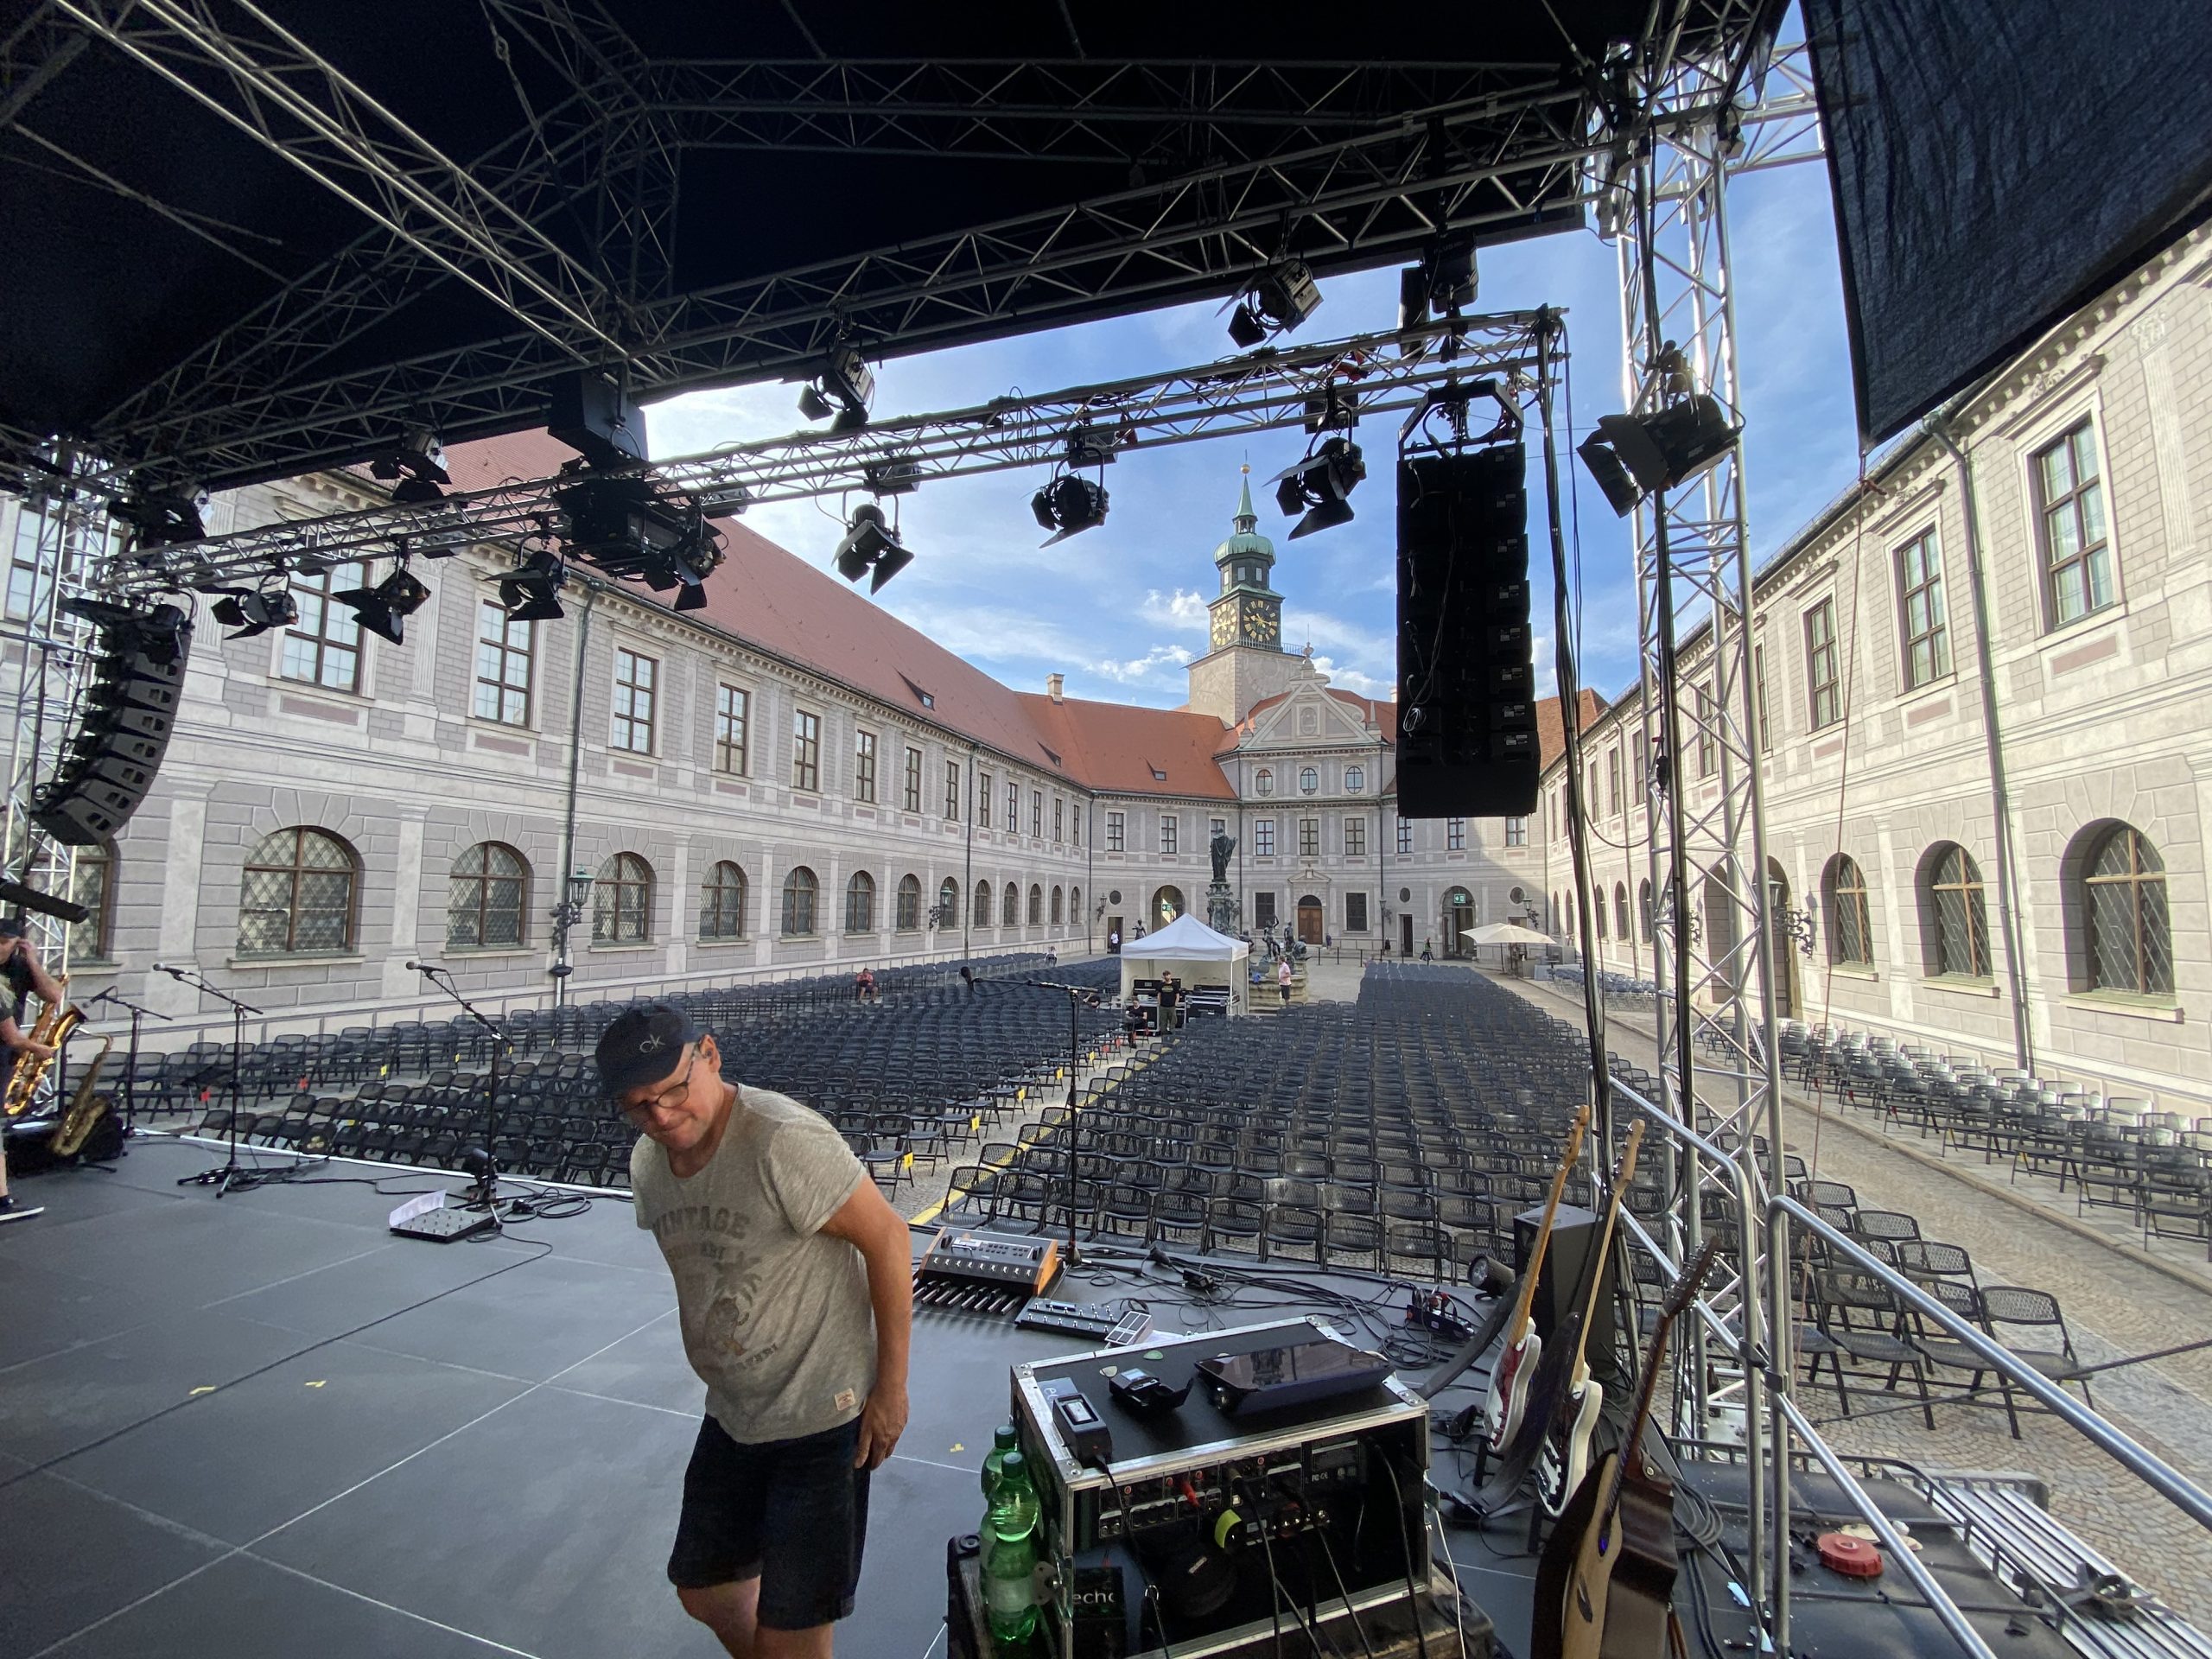 echoes performing Pink Floyd @München Brunnenhof der Residenz 2022